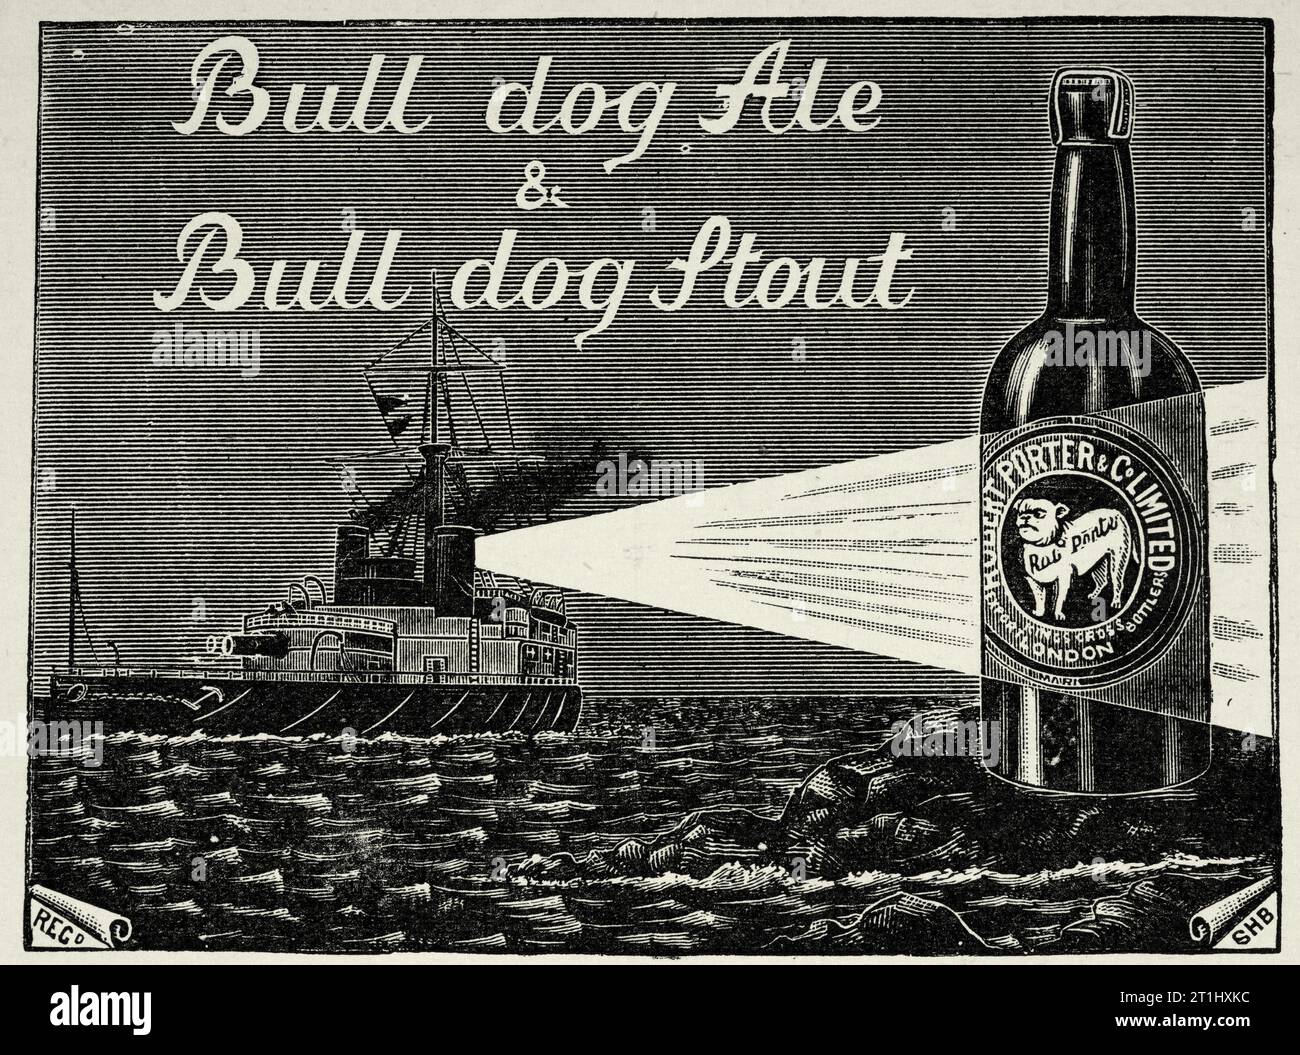 Vintage-Werbespot von Bull Dog Ale und Stout, viktorianisches Bier, 1890er Jahre, 19. Jahrhundert. Schlachtschiff, Suchscheinwerfer der Royal Navy Stockfoto